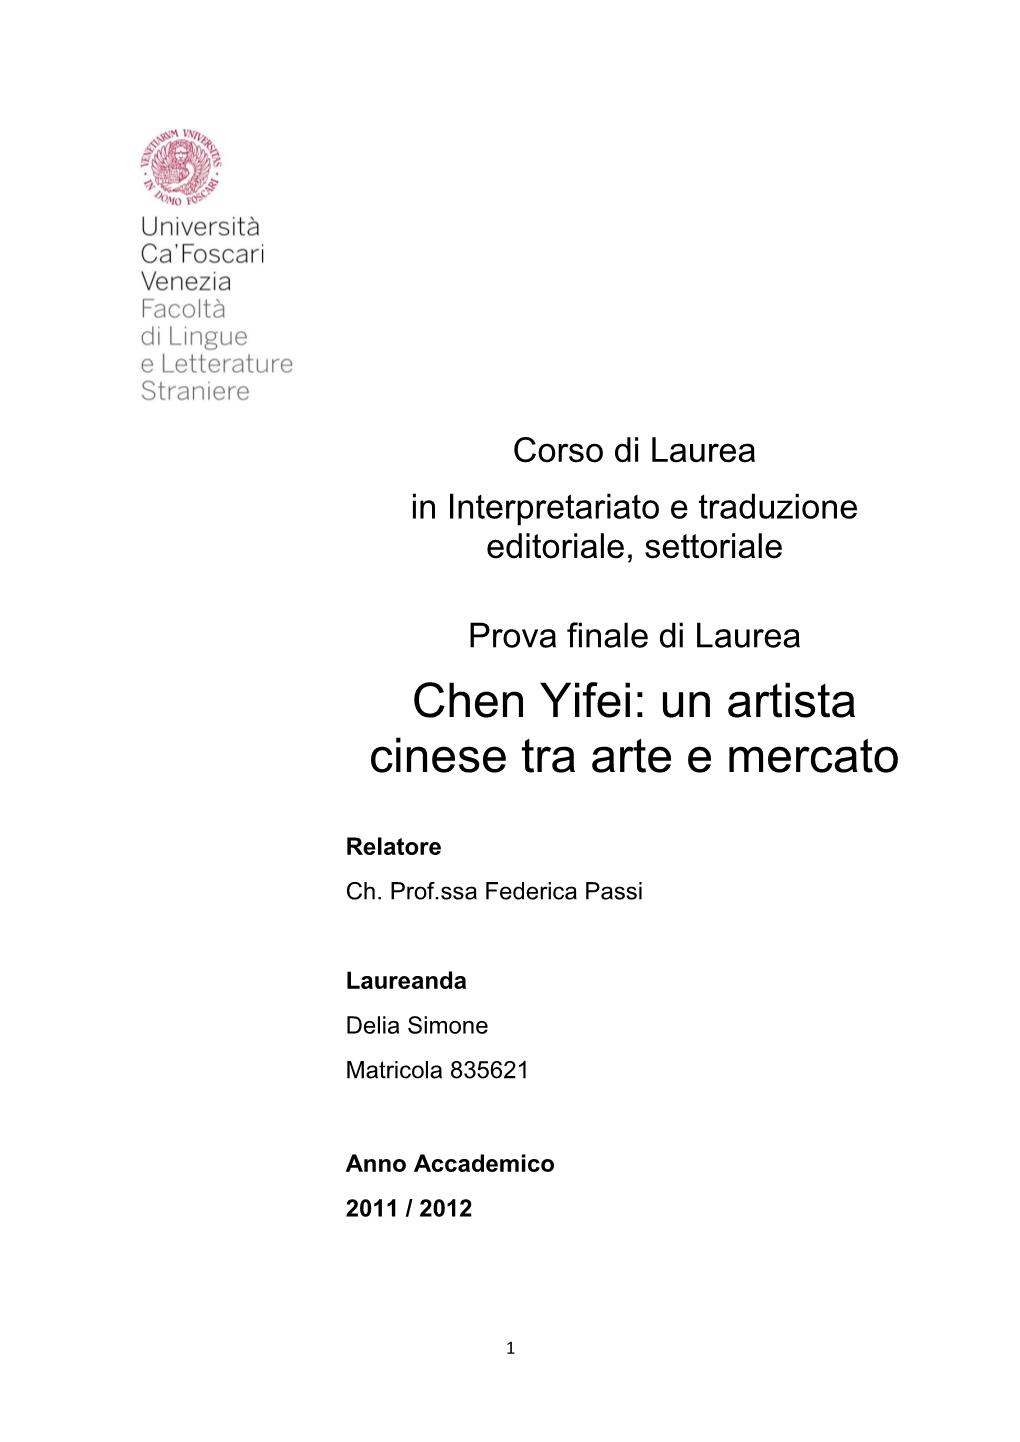 Chen Yifei: Un Artista Cinese Tra Arte E Mercato